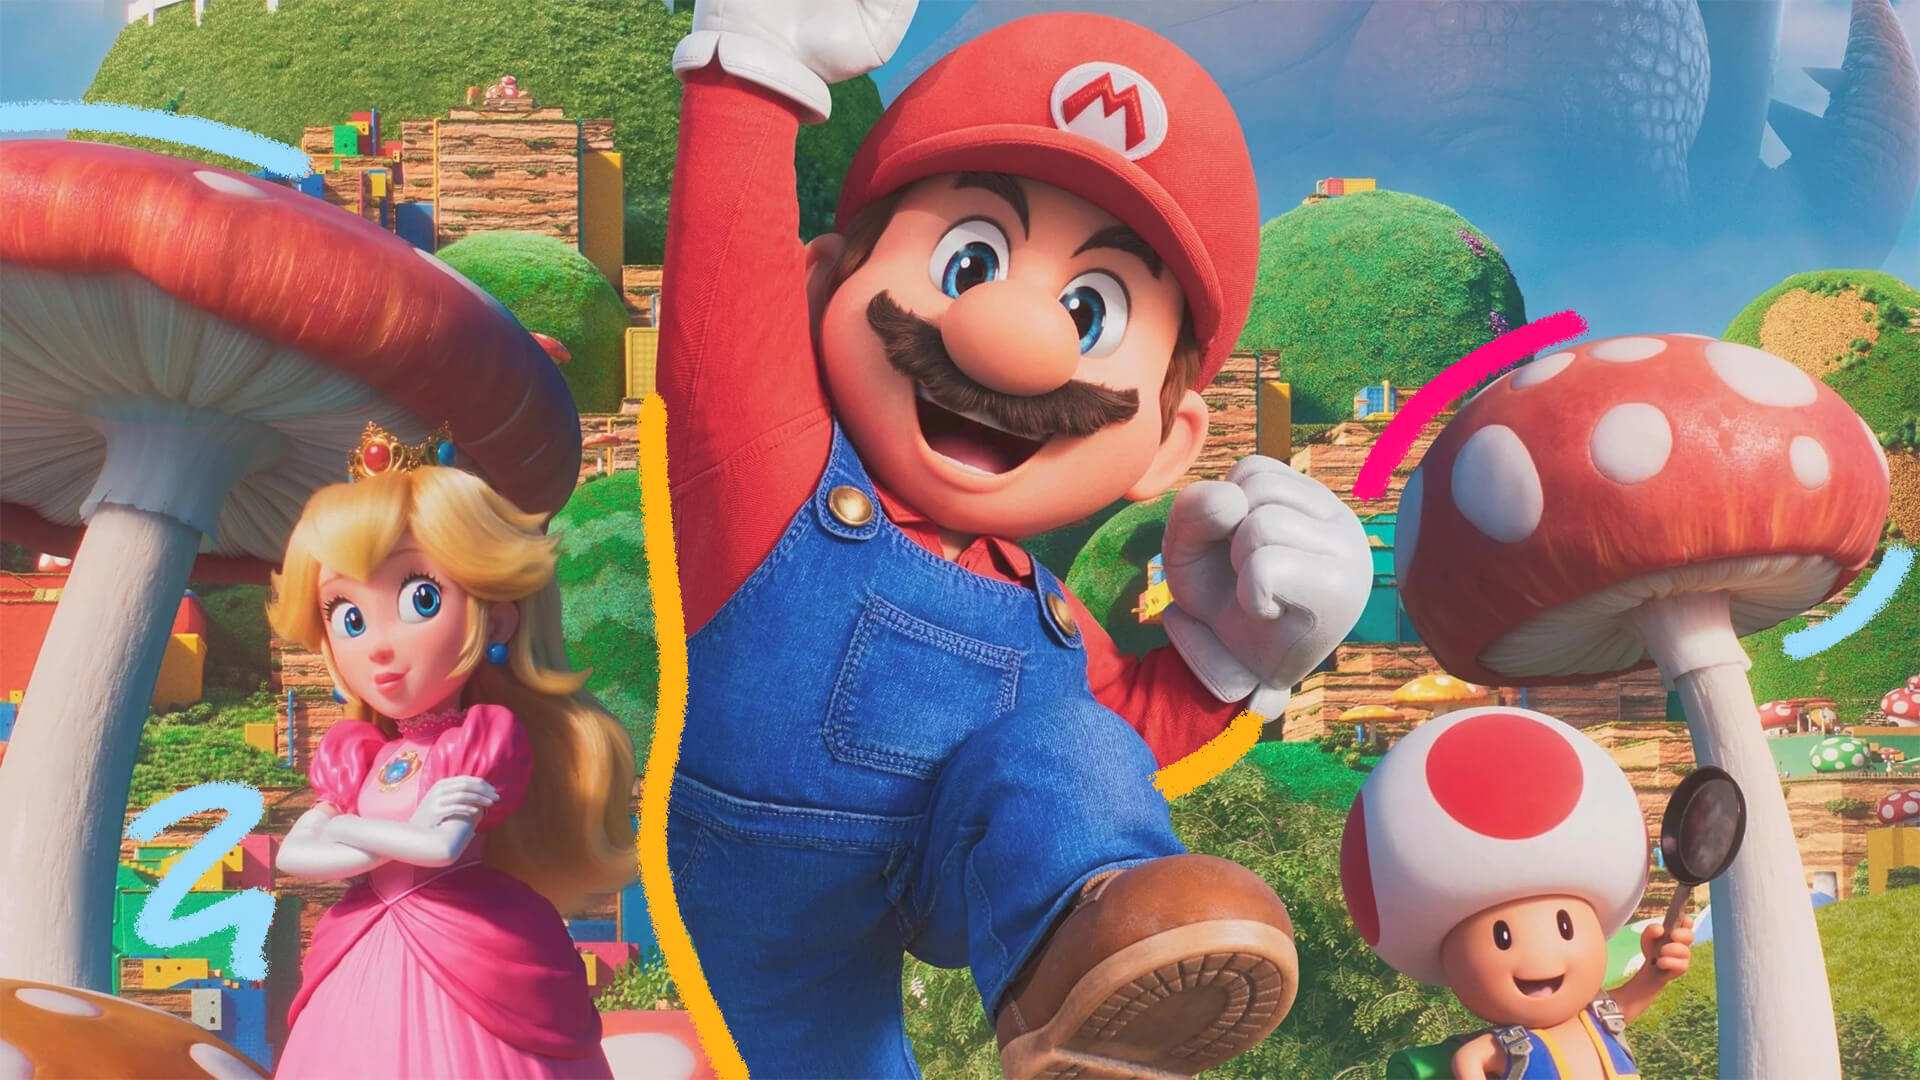 Da esquerda para direita: Peach, Mario e Toad, personagens da franquia Super Mario Bros - O filme.